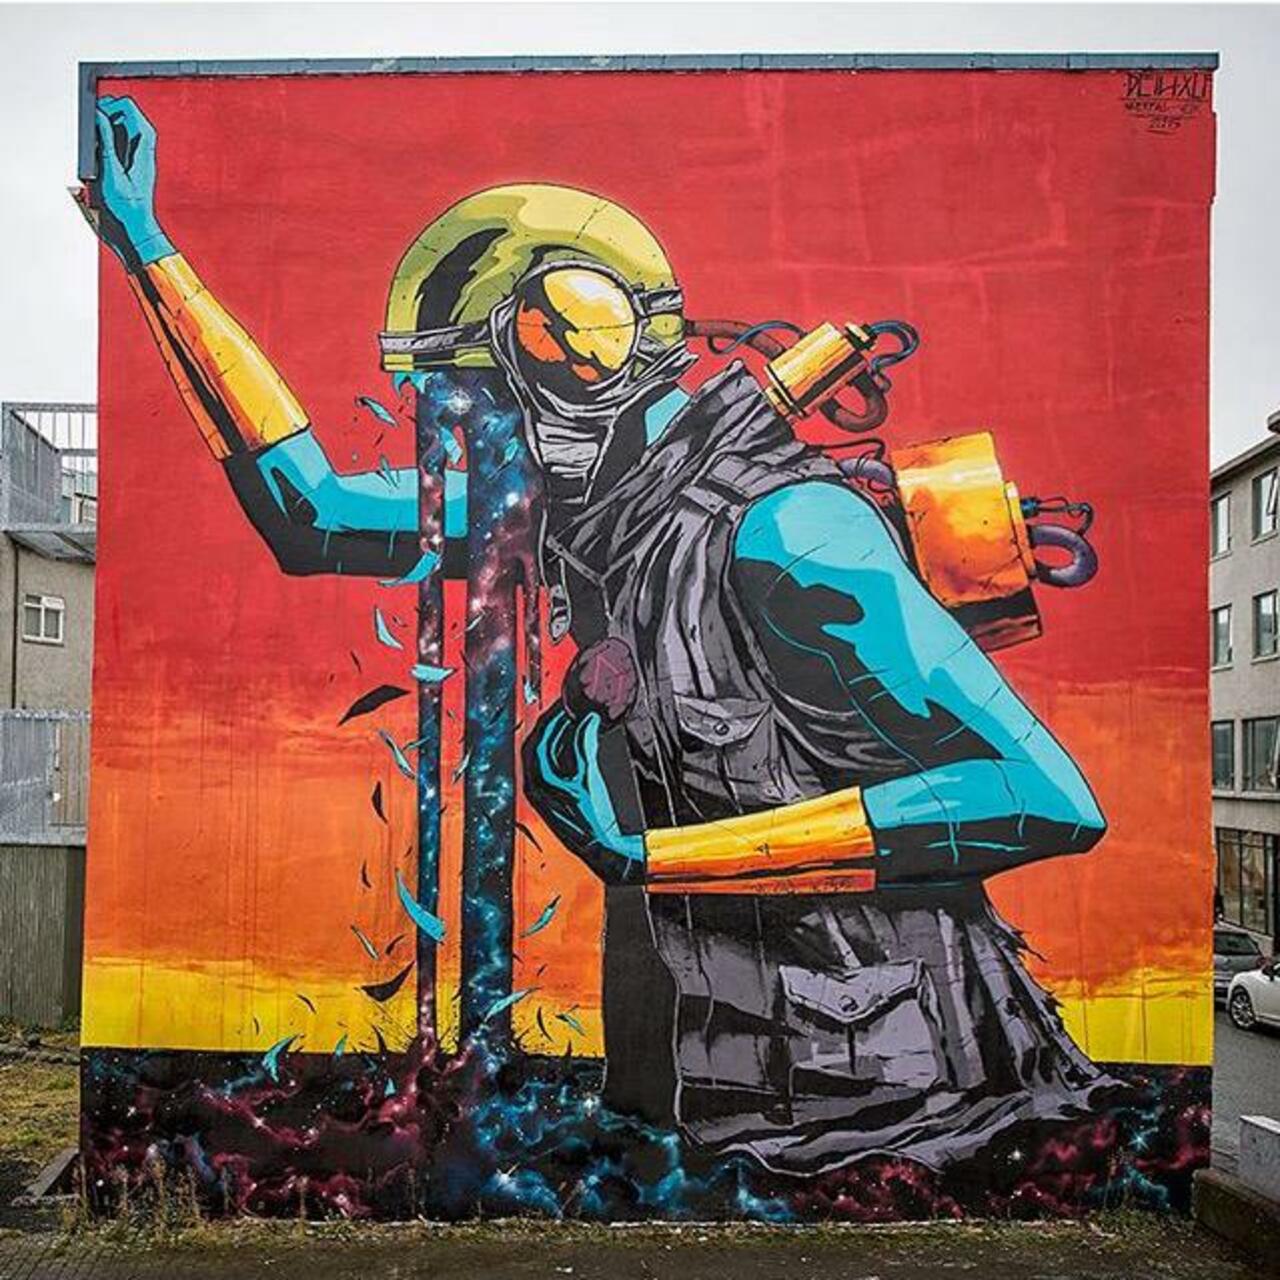 Street Art by Deih in Reykjavik 

#art #graffiti #mural #streetart https://t.co/faRuCOXDqv